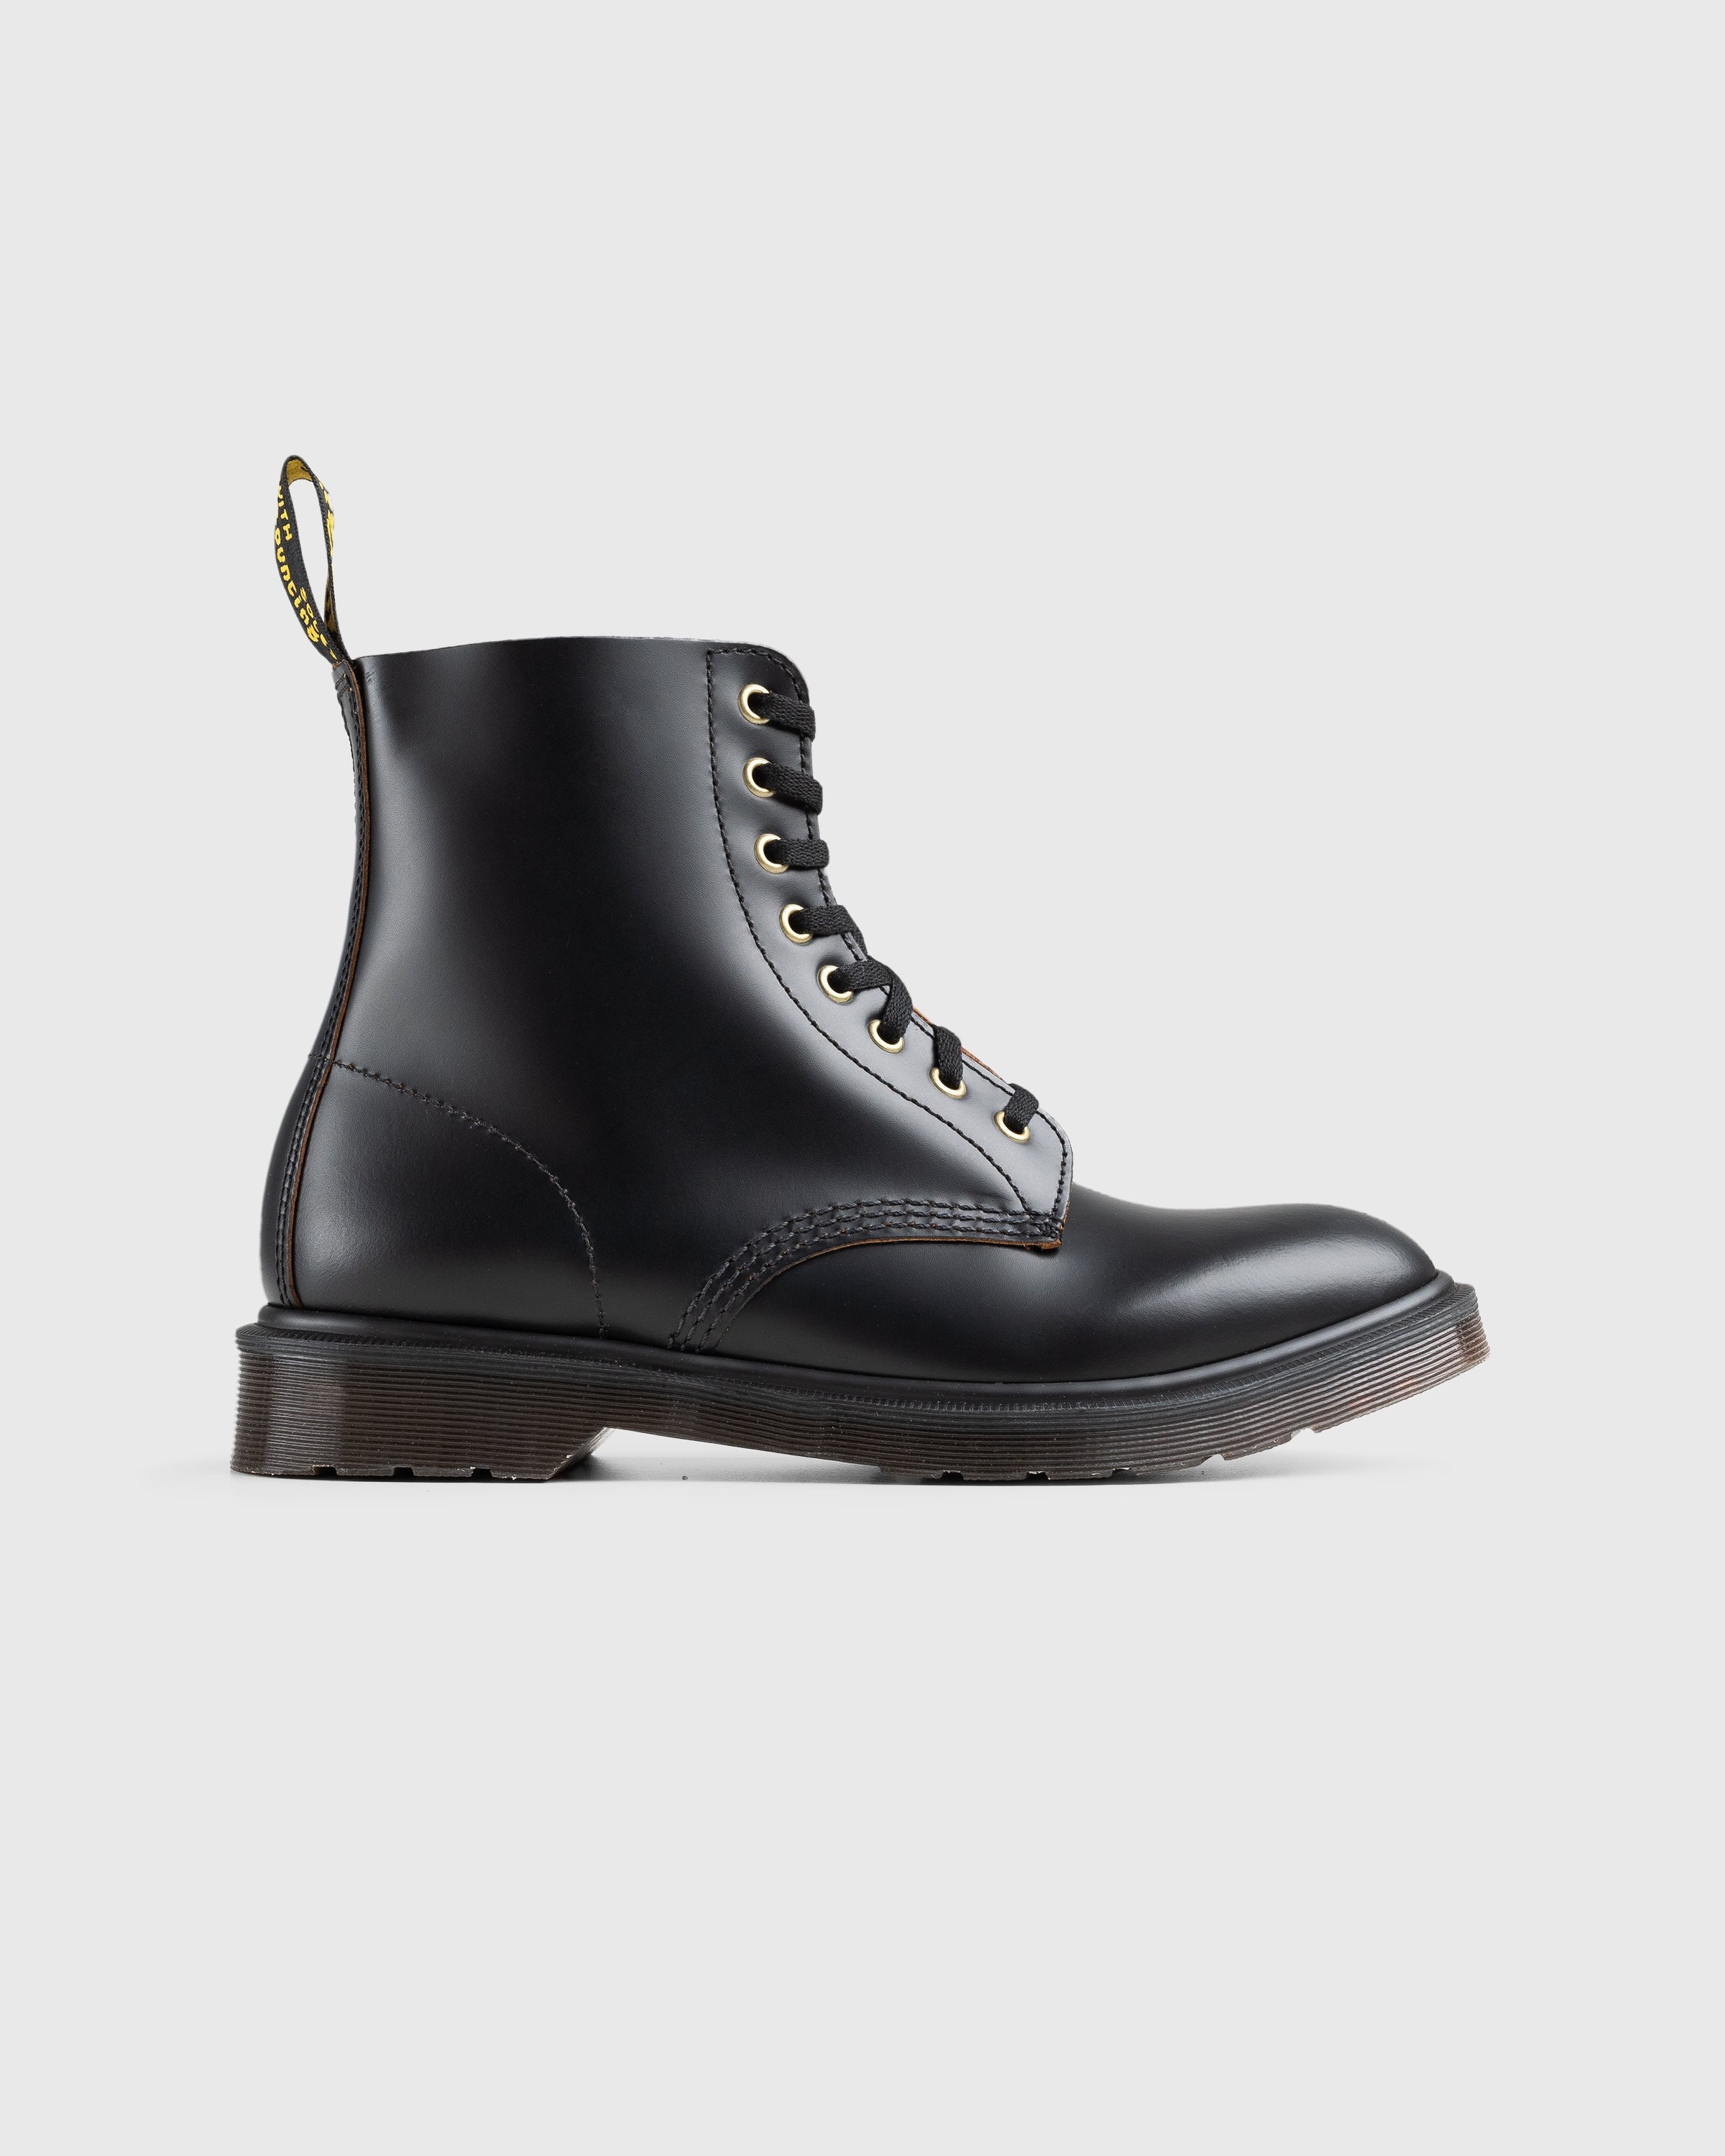 Dr. Martens – 1460 Vintage Smooth Black - Boots - Black - Image 1